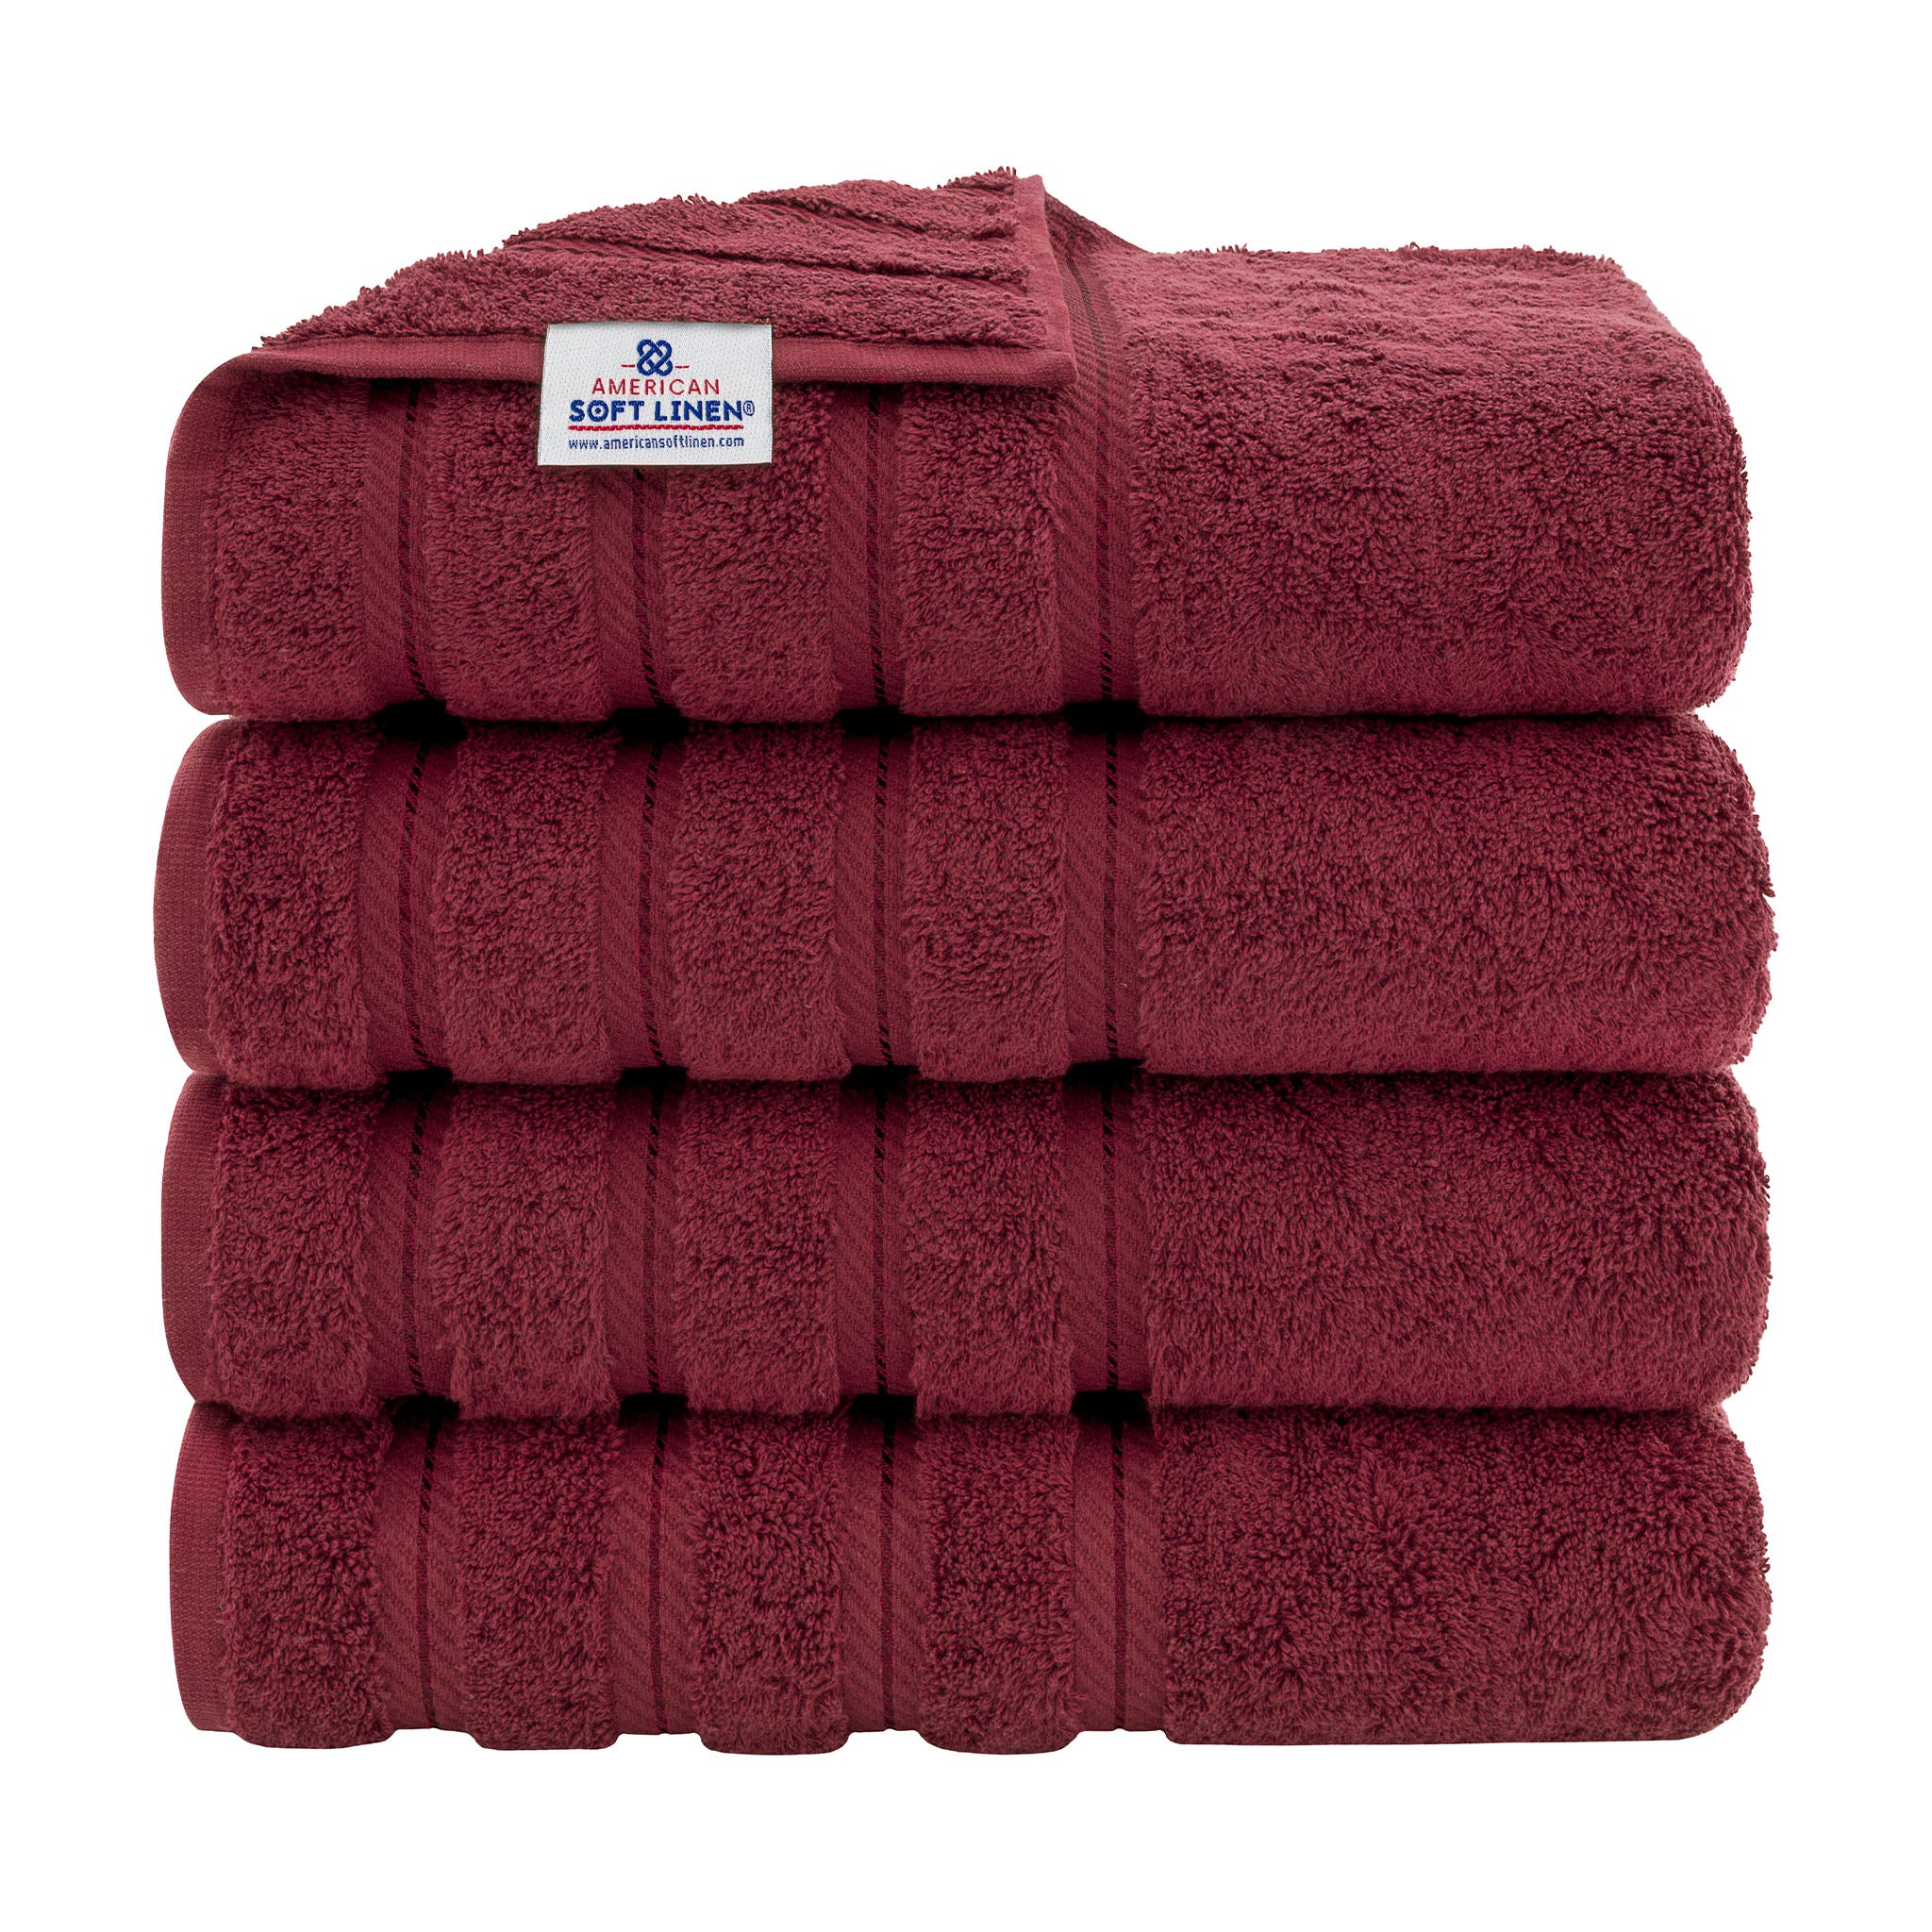 American Soft Linen 100% Turkish Cotton 4 Pack Bath Towel Set bordeaux-red-1